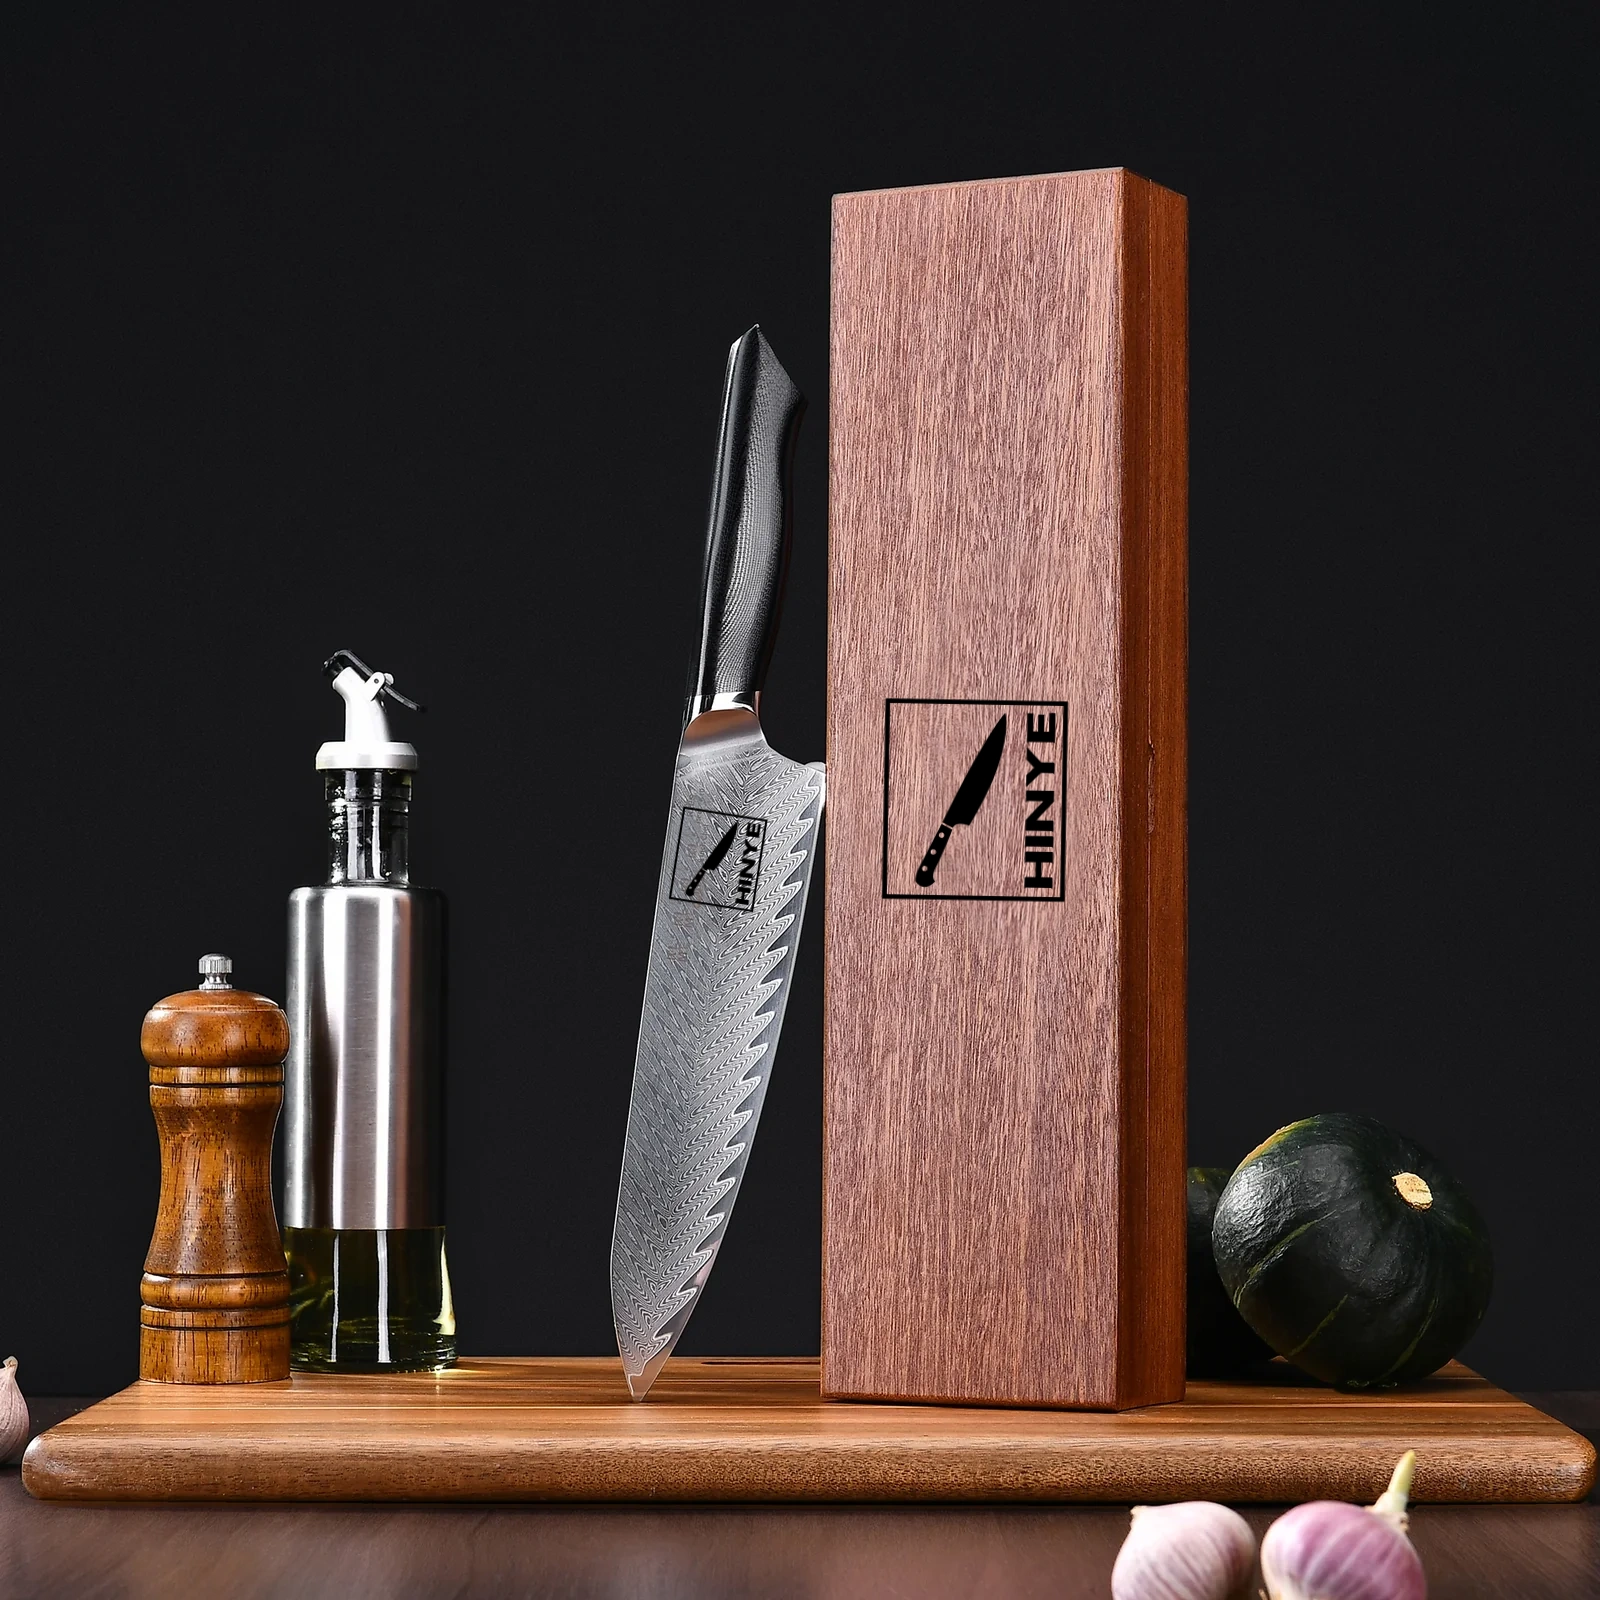 Hinye-Helix 8" Chef In Wood Box